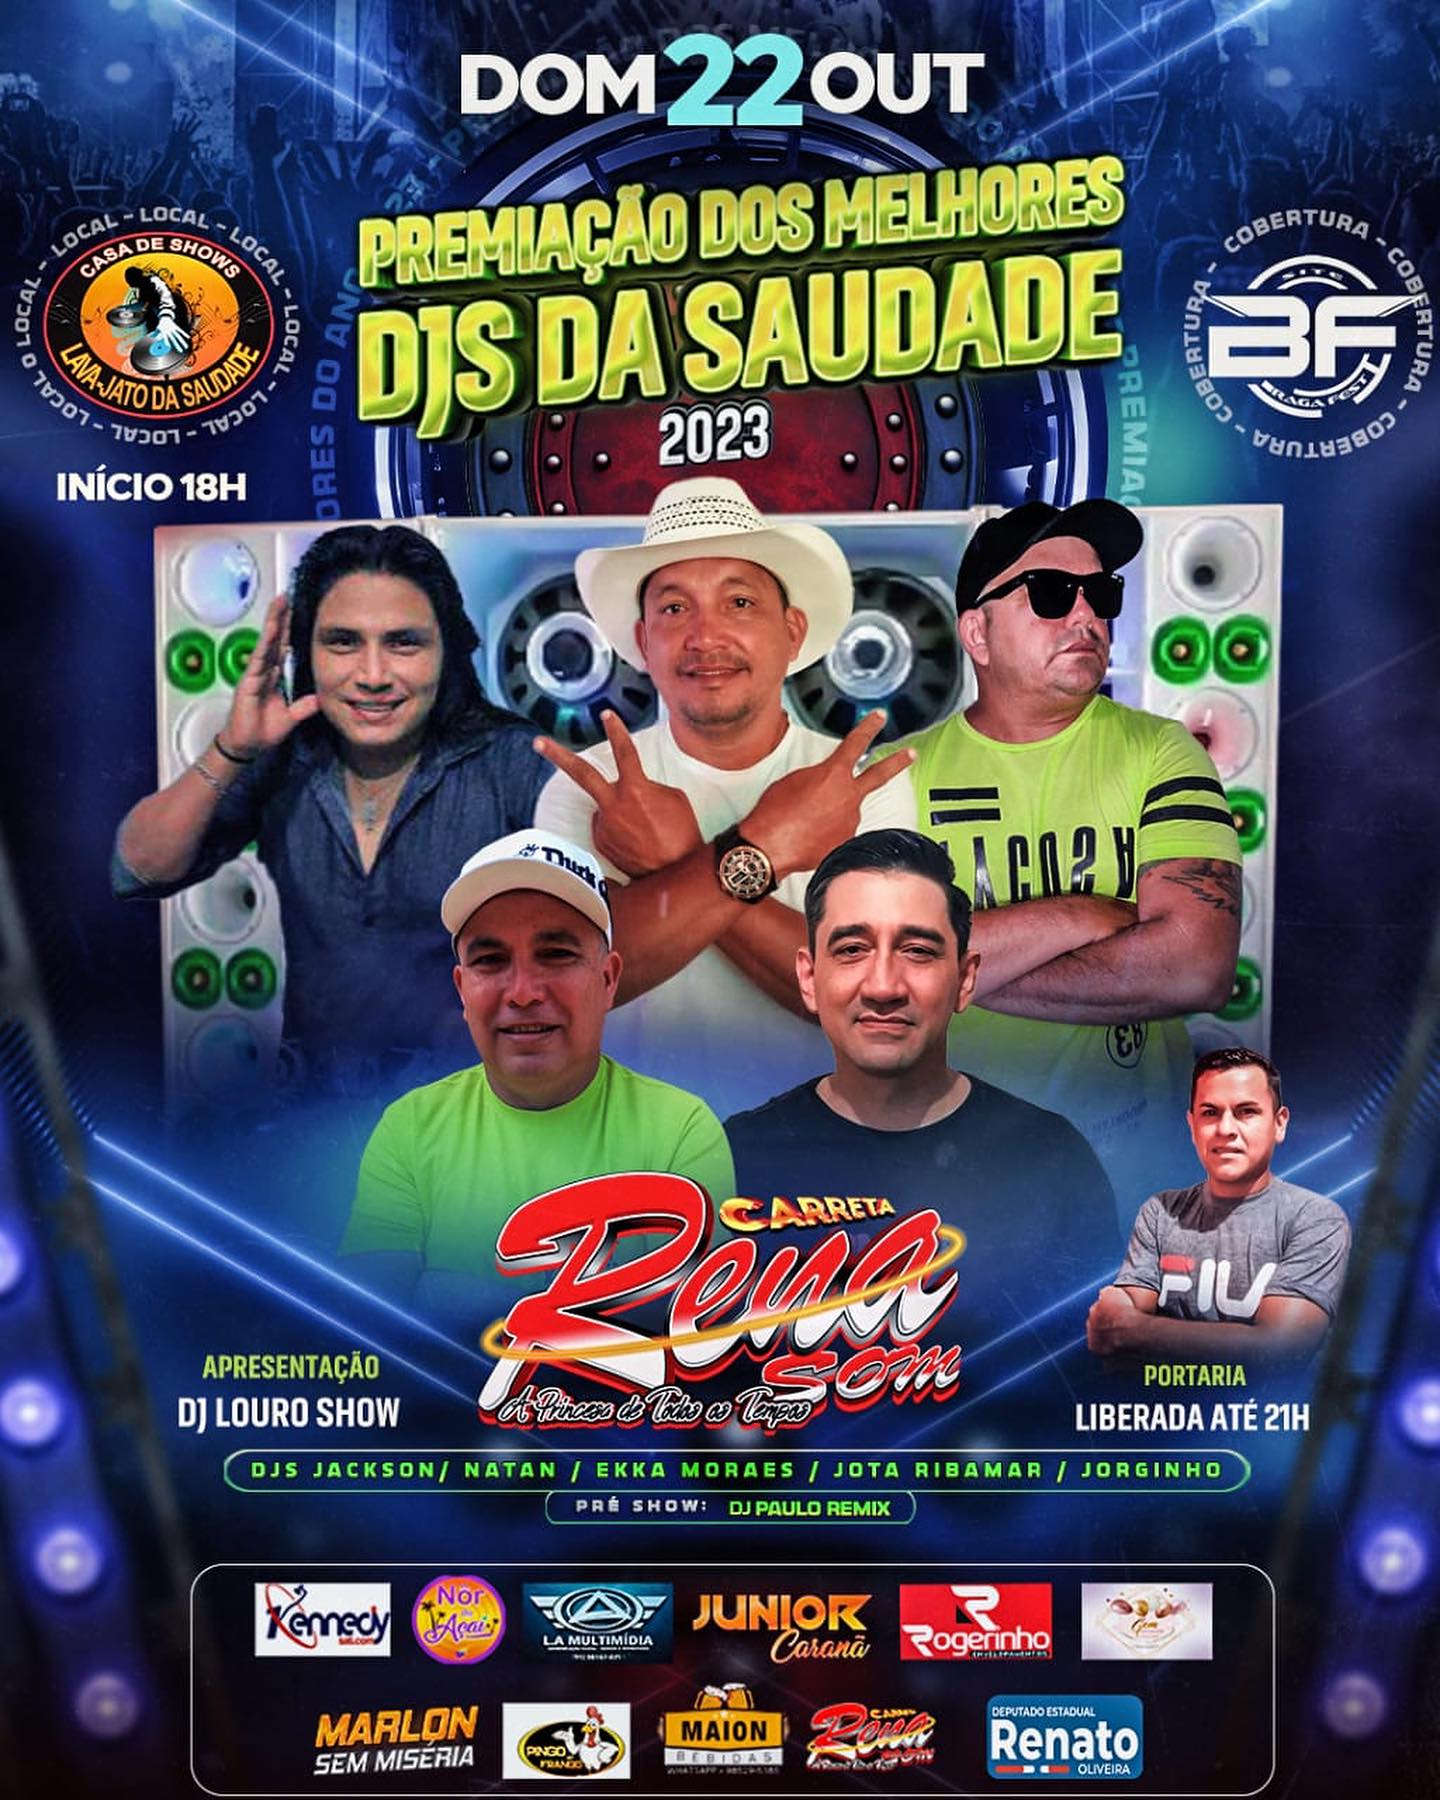 PREMIAÇÃO DODS MELHORES DJS DA SAUDADE 2023